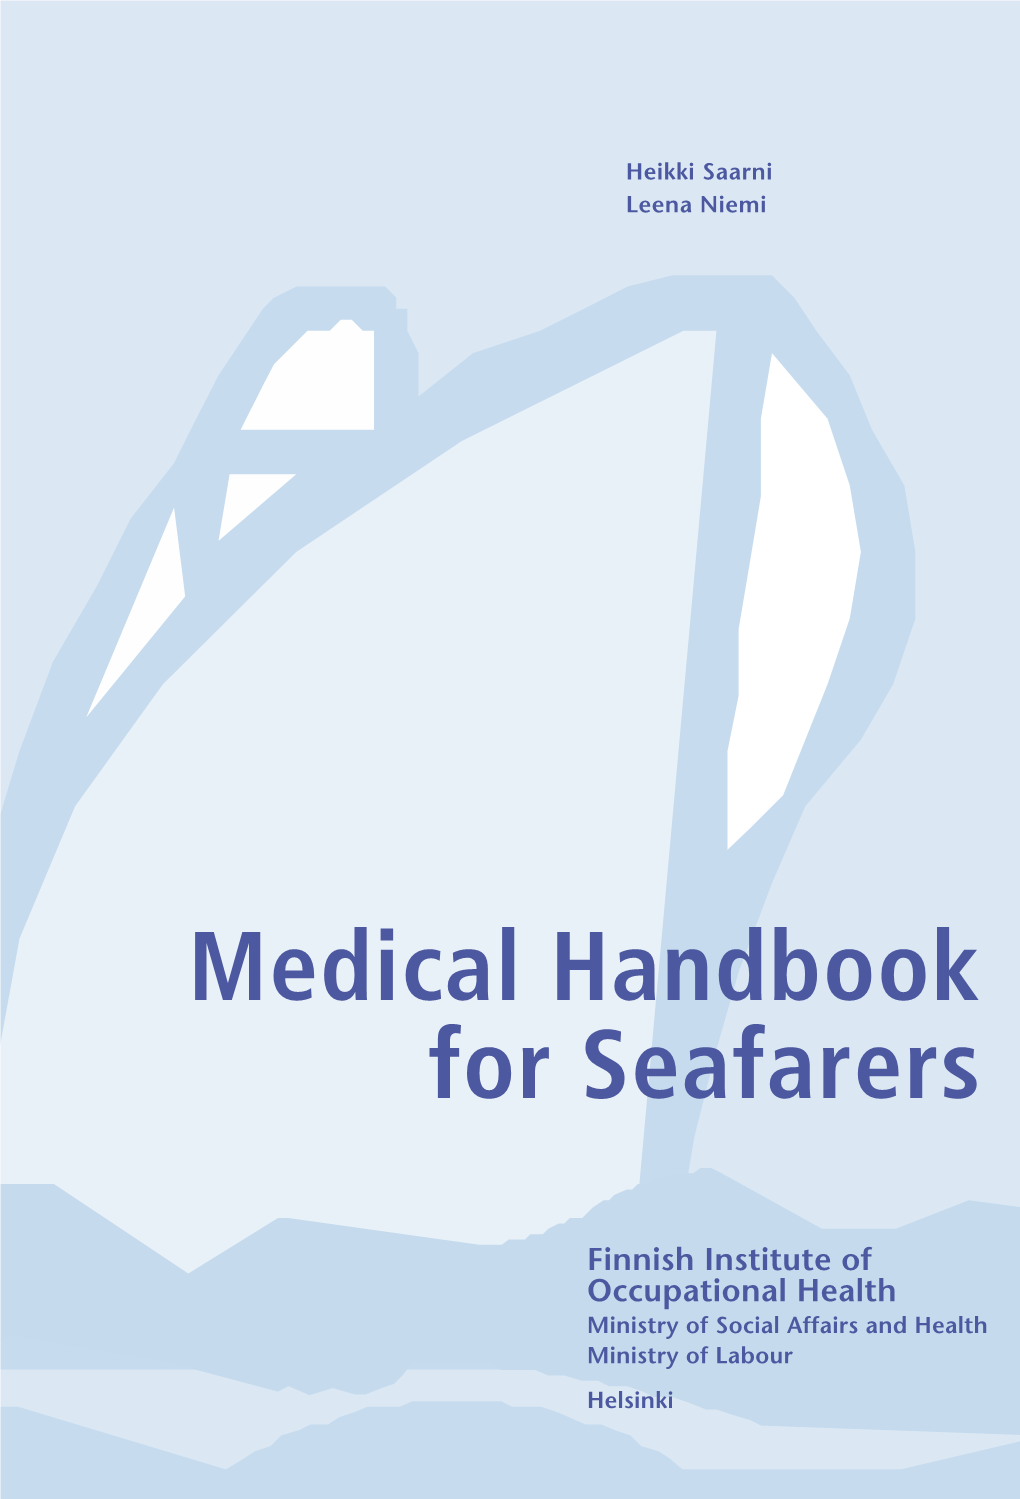 Medical Handbook for Seafarers